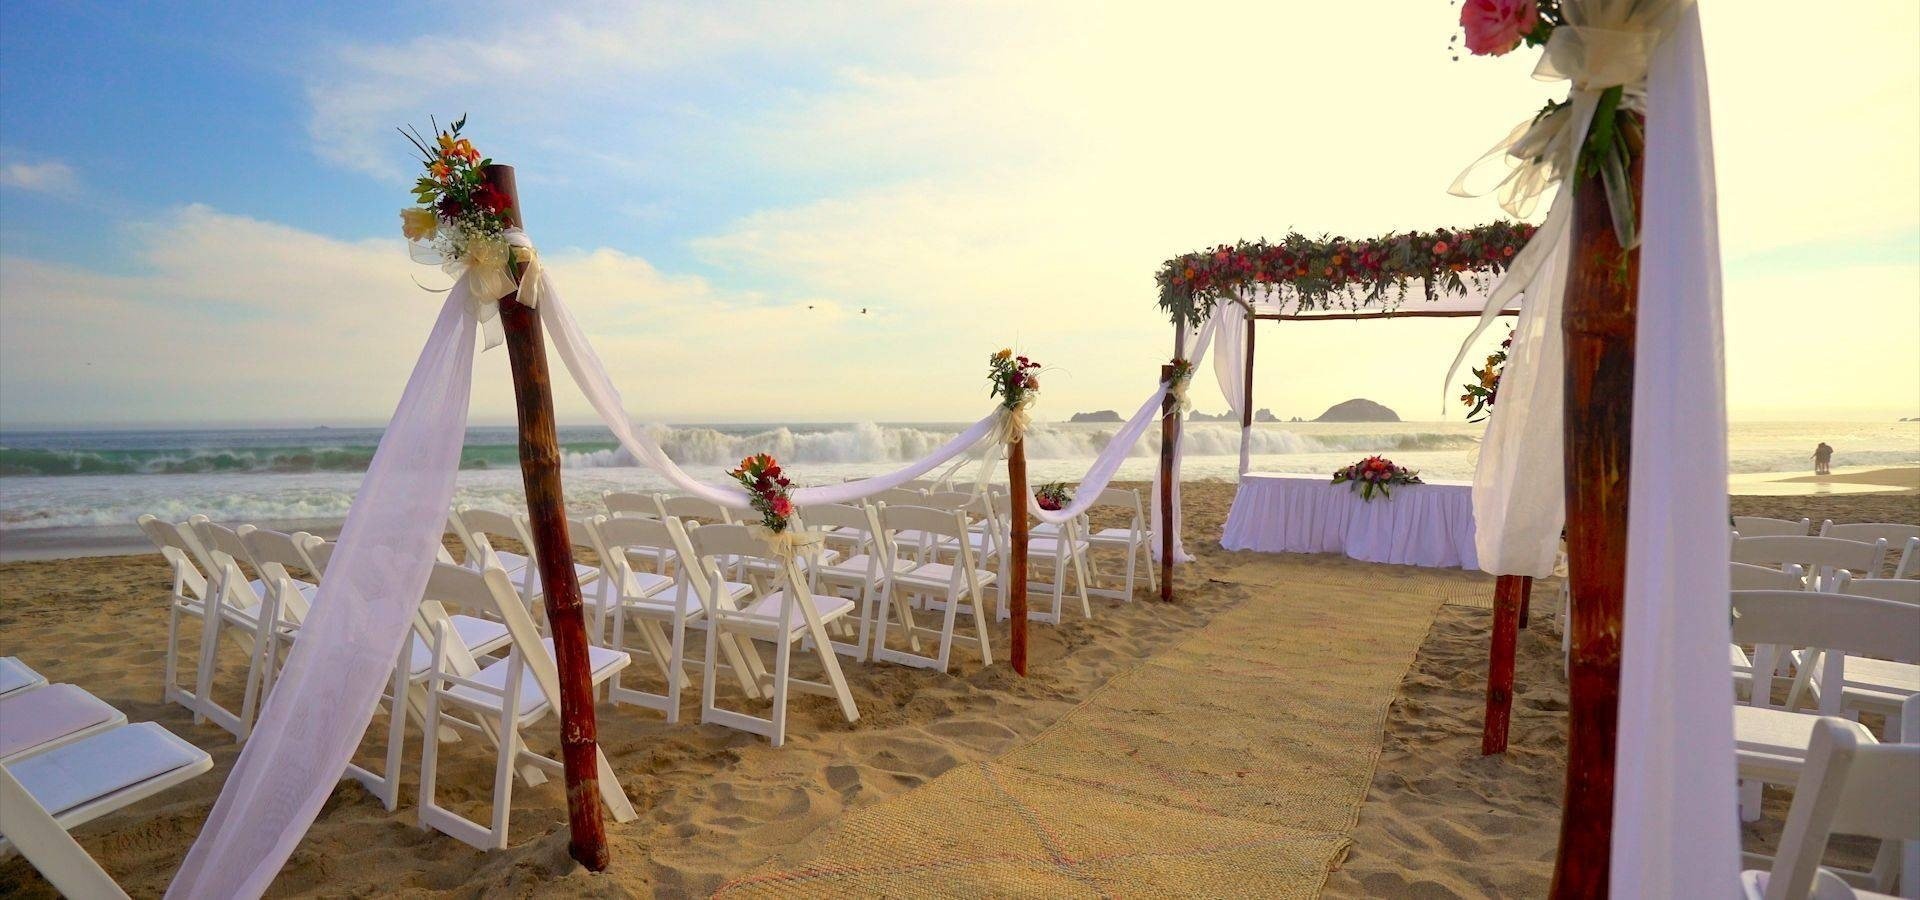 Altar decorado para casamentos, case-se na praia com Park Royal Hotels and Resorts